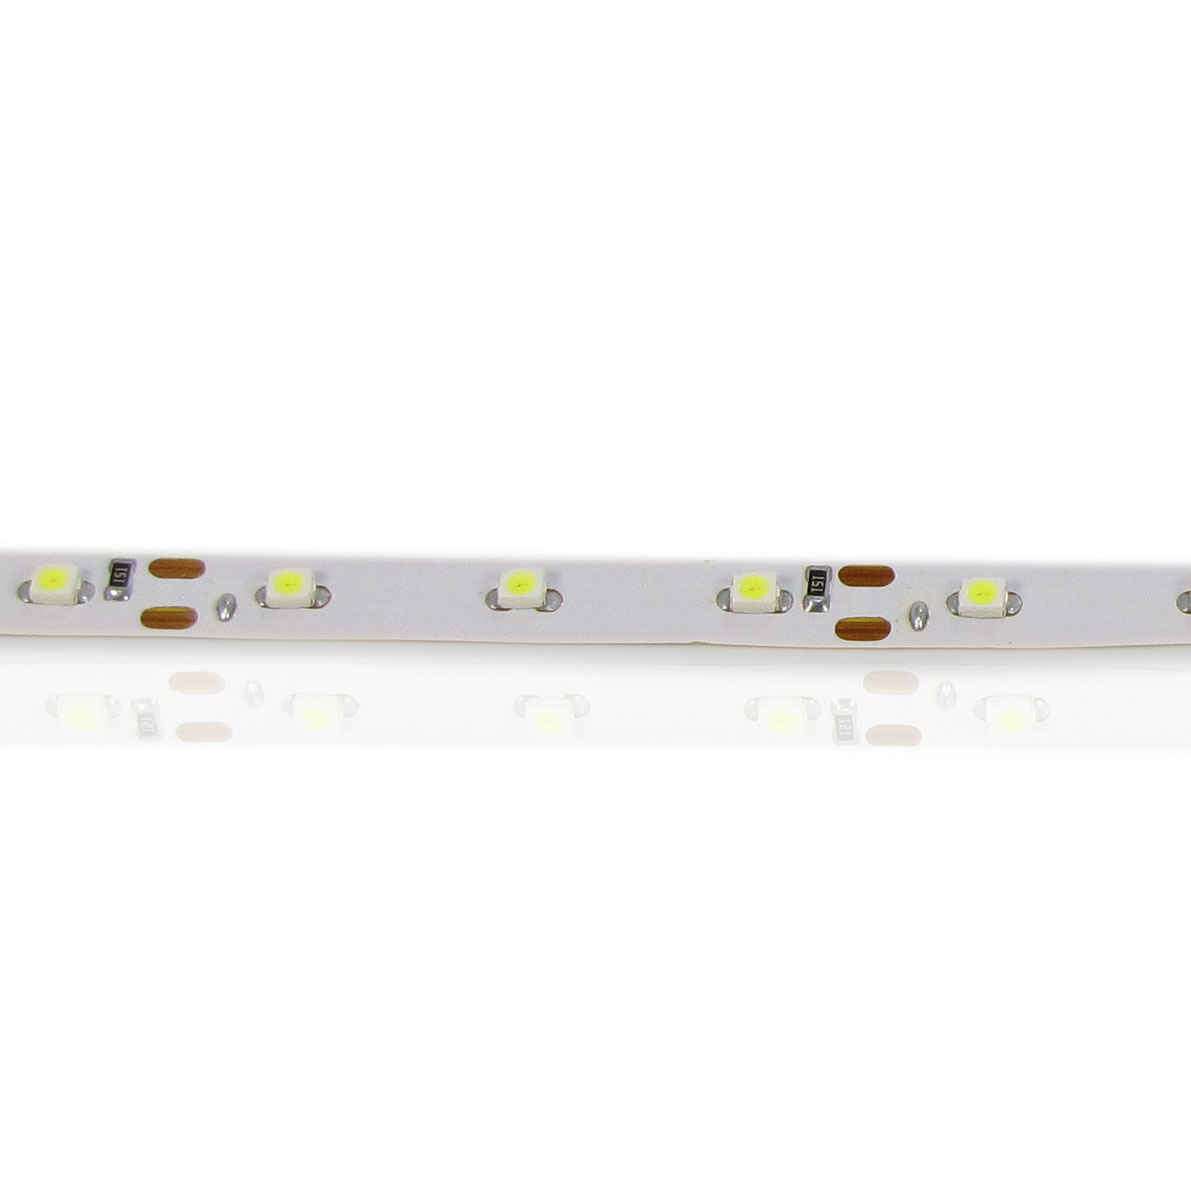 светодиодная лента standart class, 3528, 60led/m, white, 12v, ip33, артикул 52701